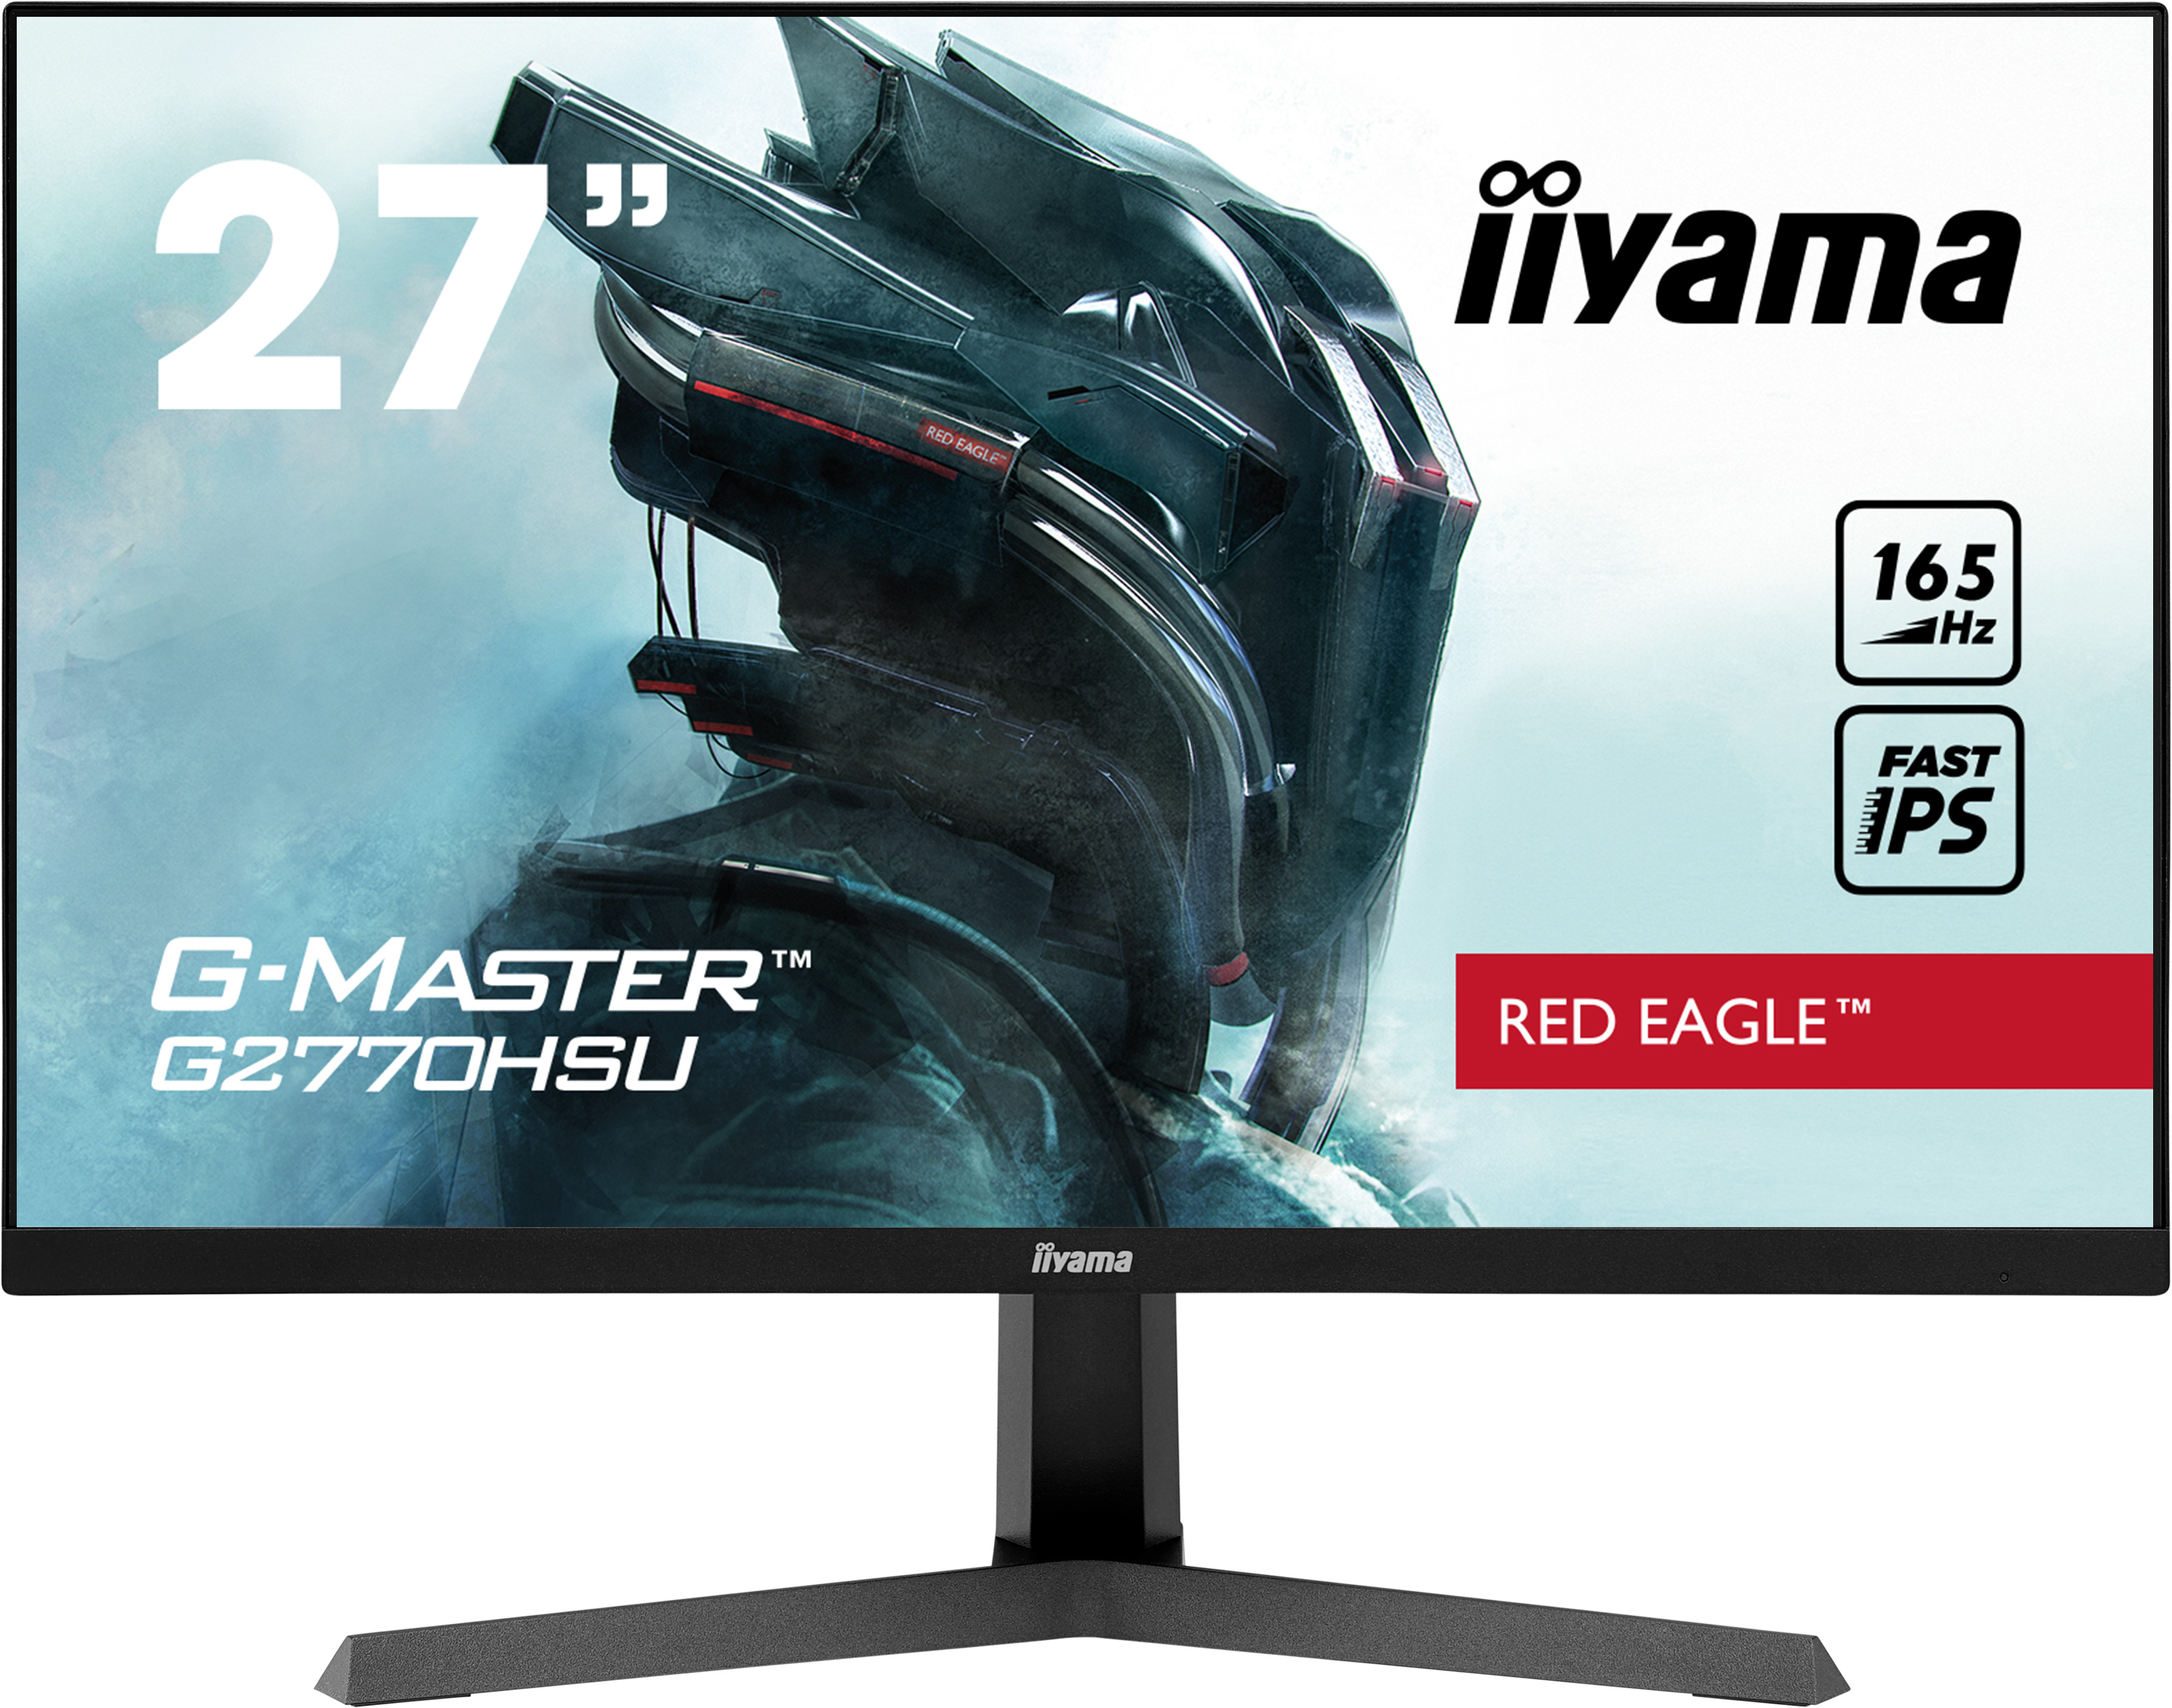 Iiyama G-MASTER G2770HSU-B1 RED EAGLE | 27" | 1920 x 1080 @165Hz (2.1 megapixel Full HD, DisplayPort) | Gaming Monitor